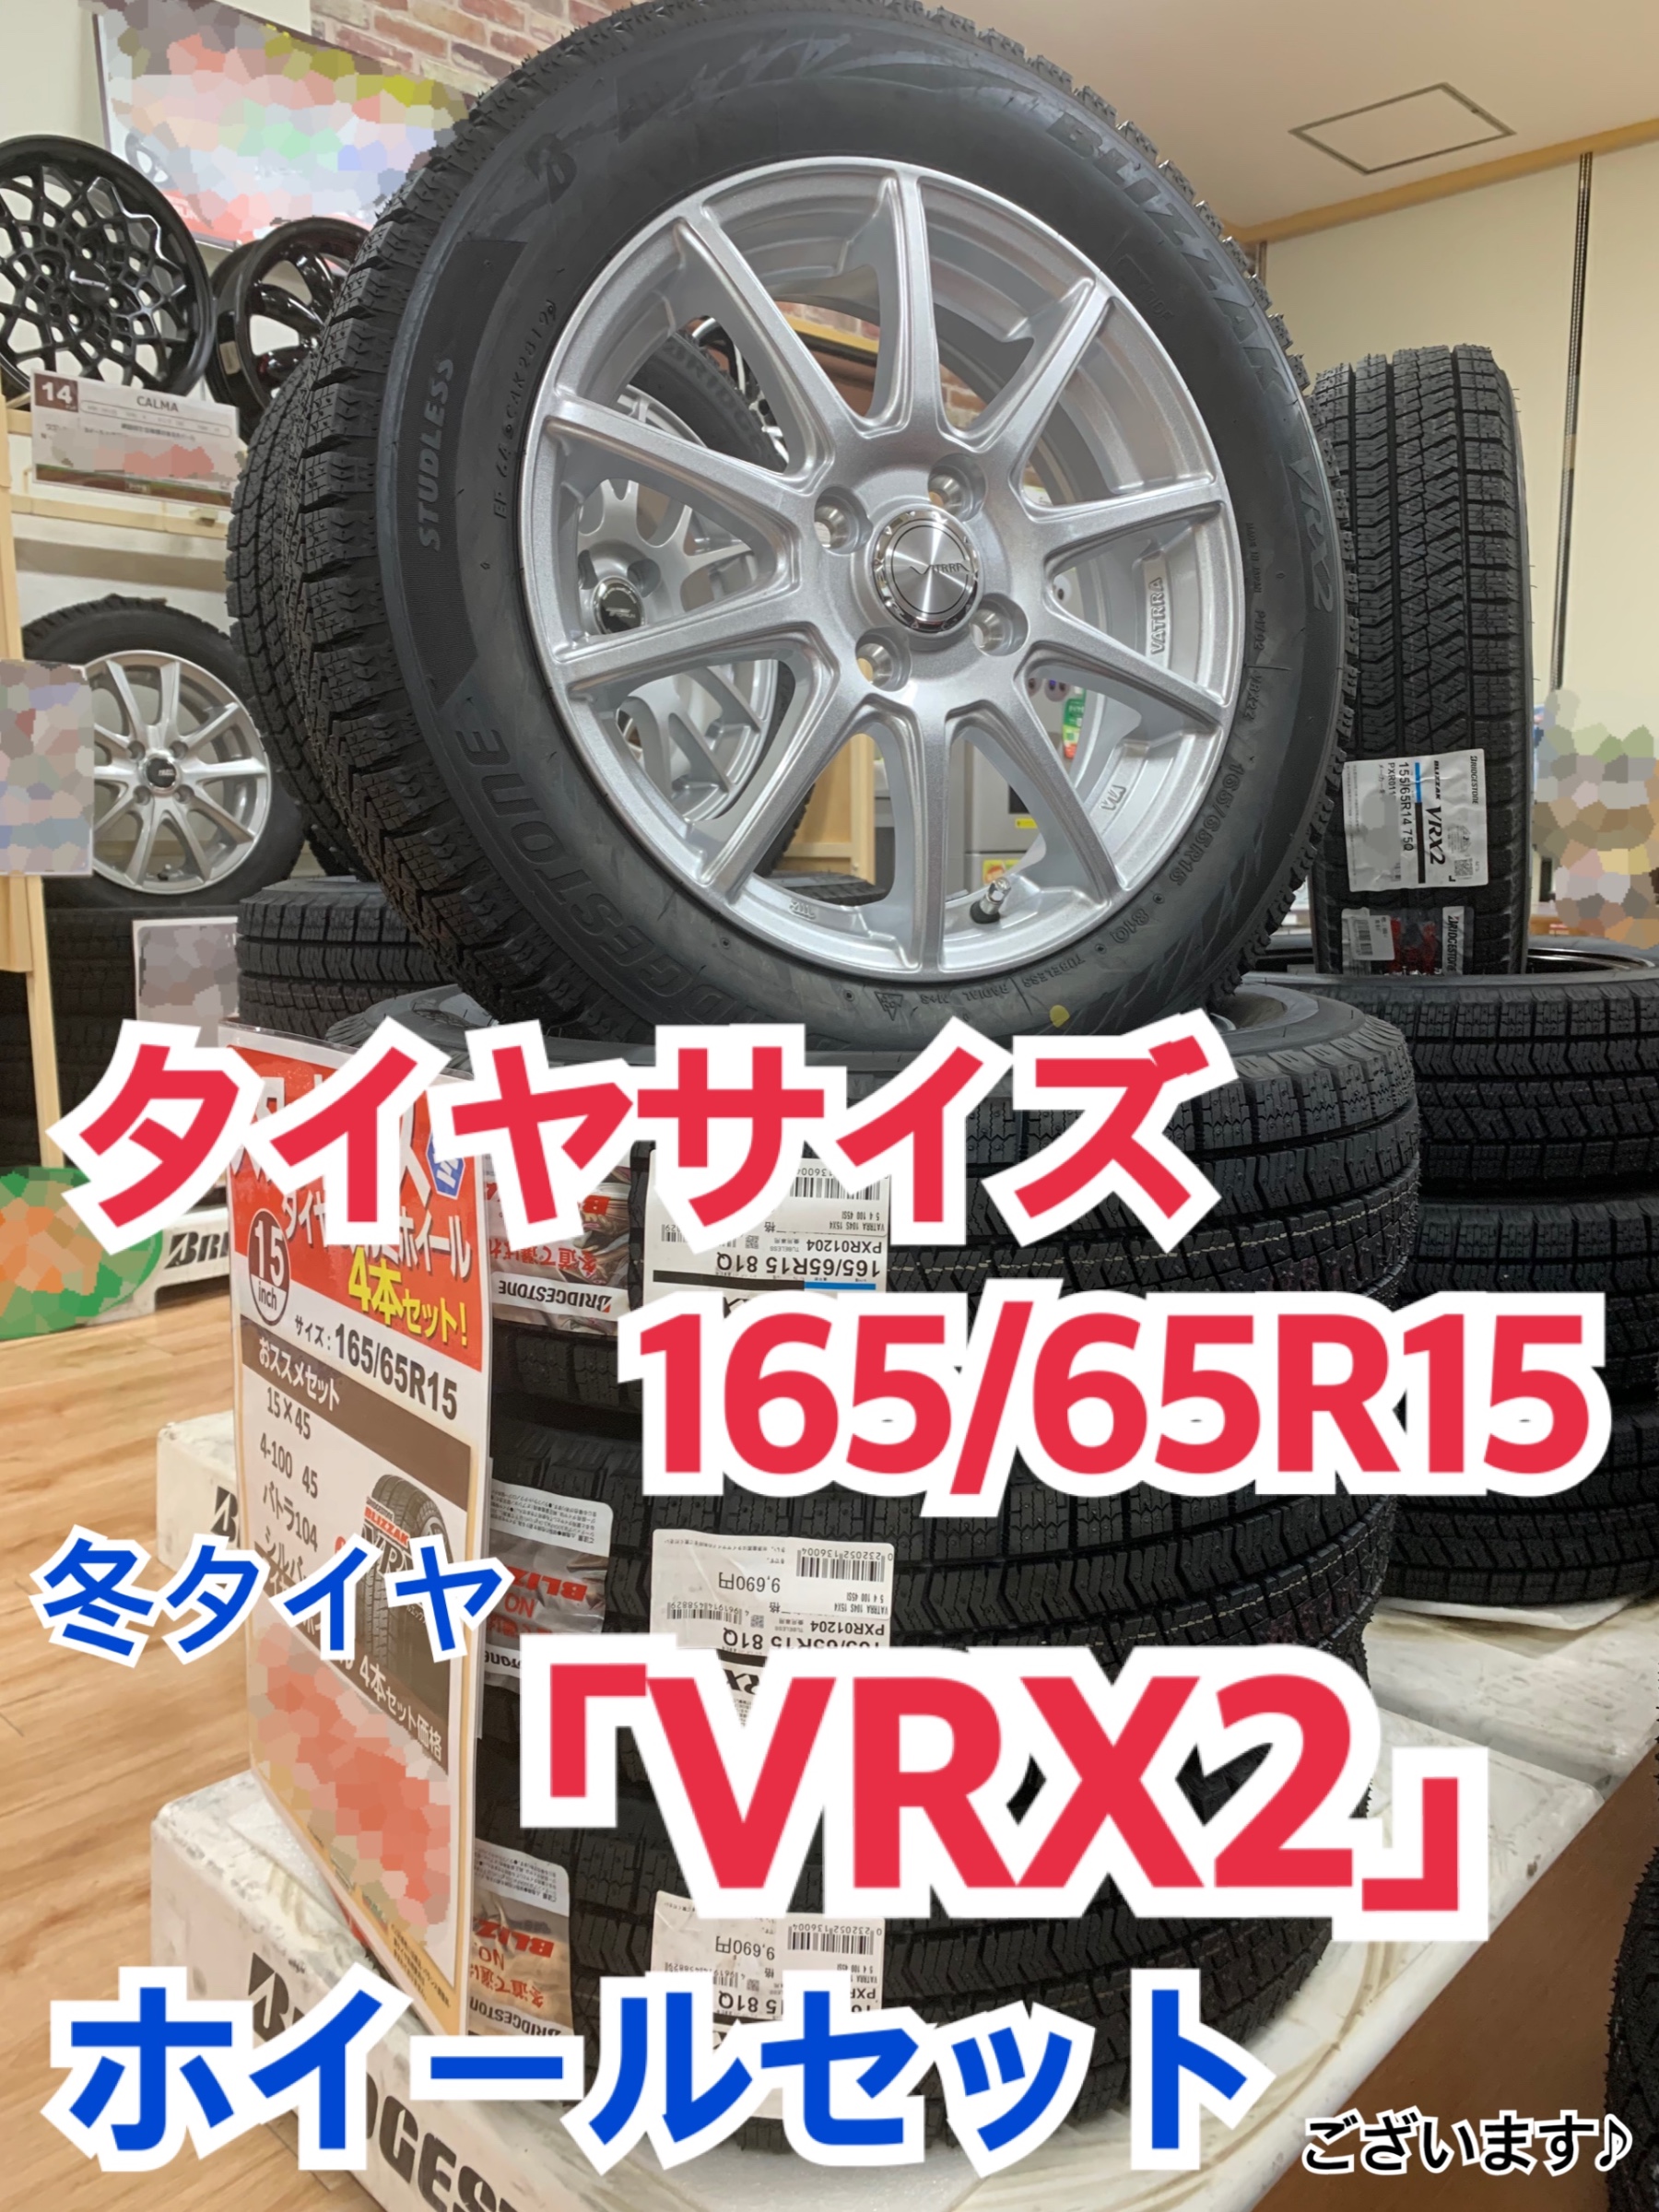 タイヤサイズ:165/65R15 冬タイヤ「VRX2」 ホイールセットございます 